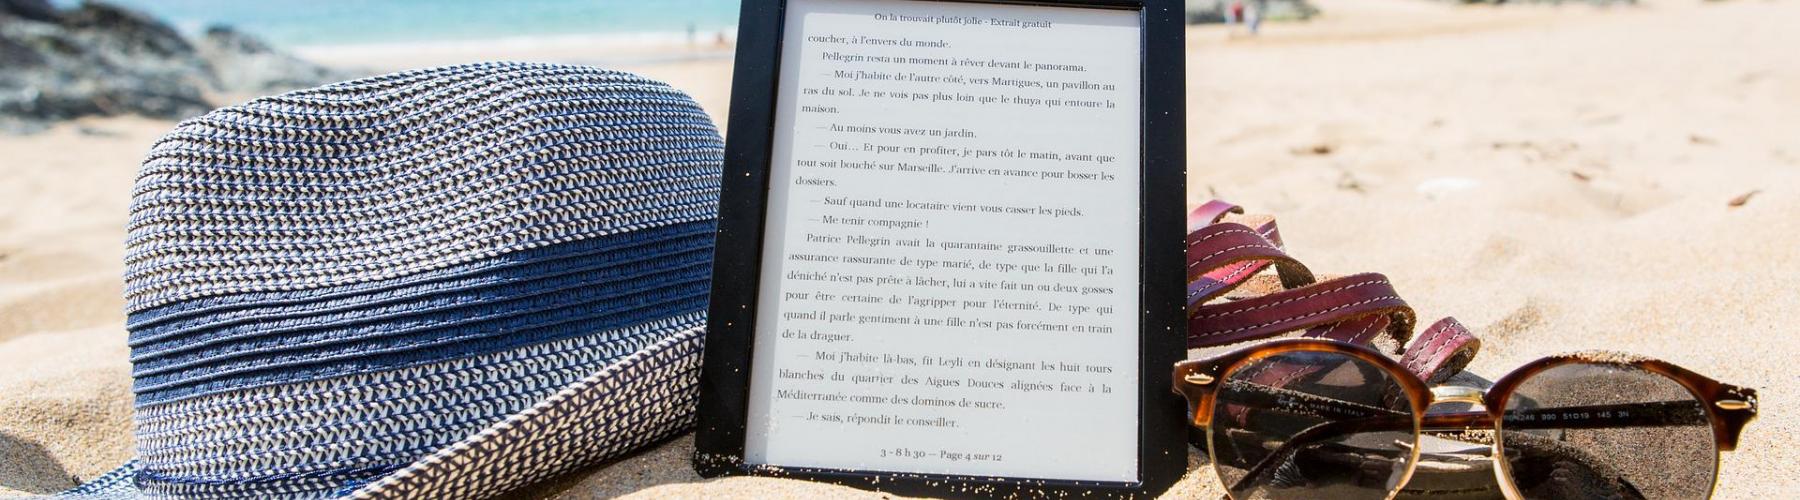 chapeau tablette et lunettes de soleil sur la plage